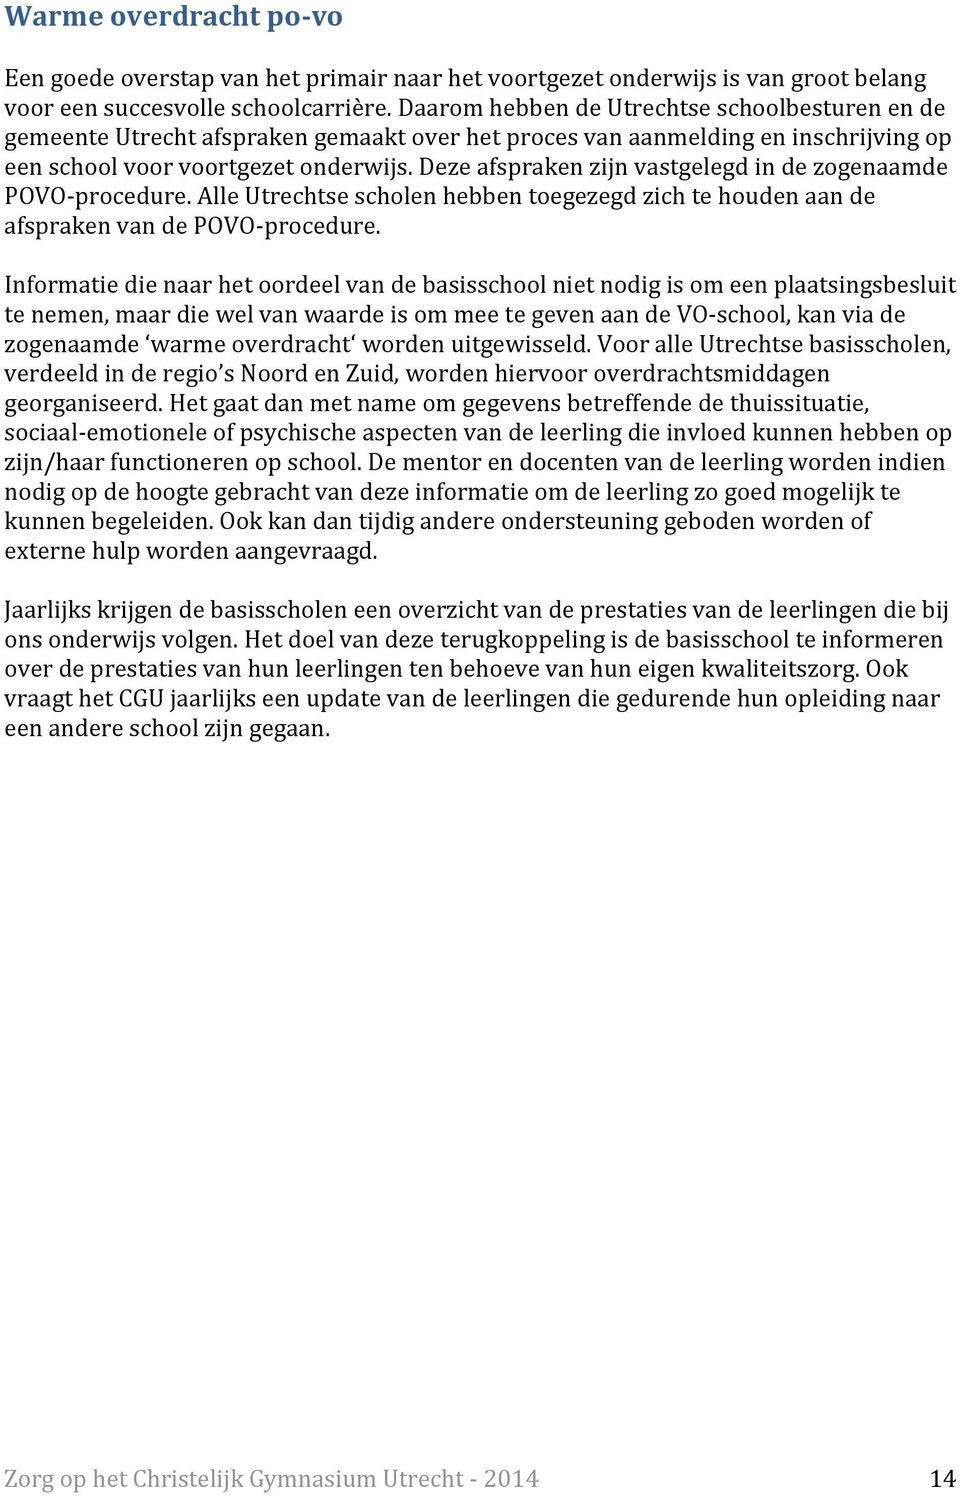 Deze afspraken zijn vastgelegd in de zogenaamde POVO-procedure. Alle Utrechtse scholen hebben toegezegd zich te houden aan de afspraken van de POVO-procedure.